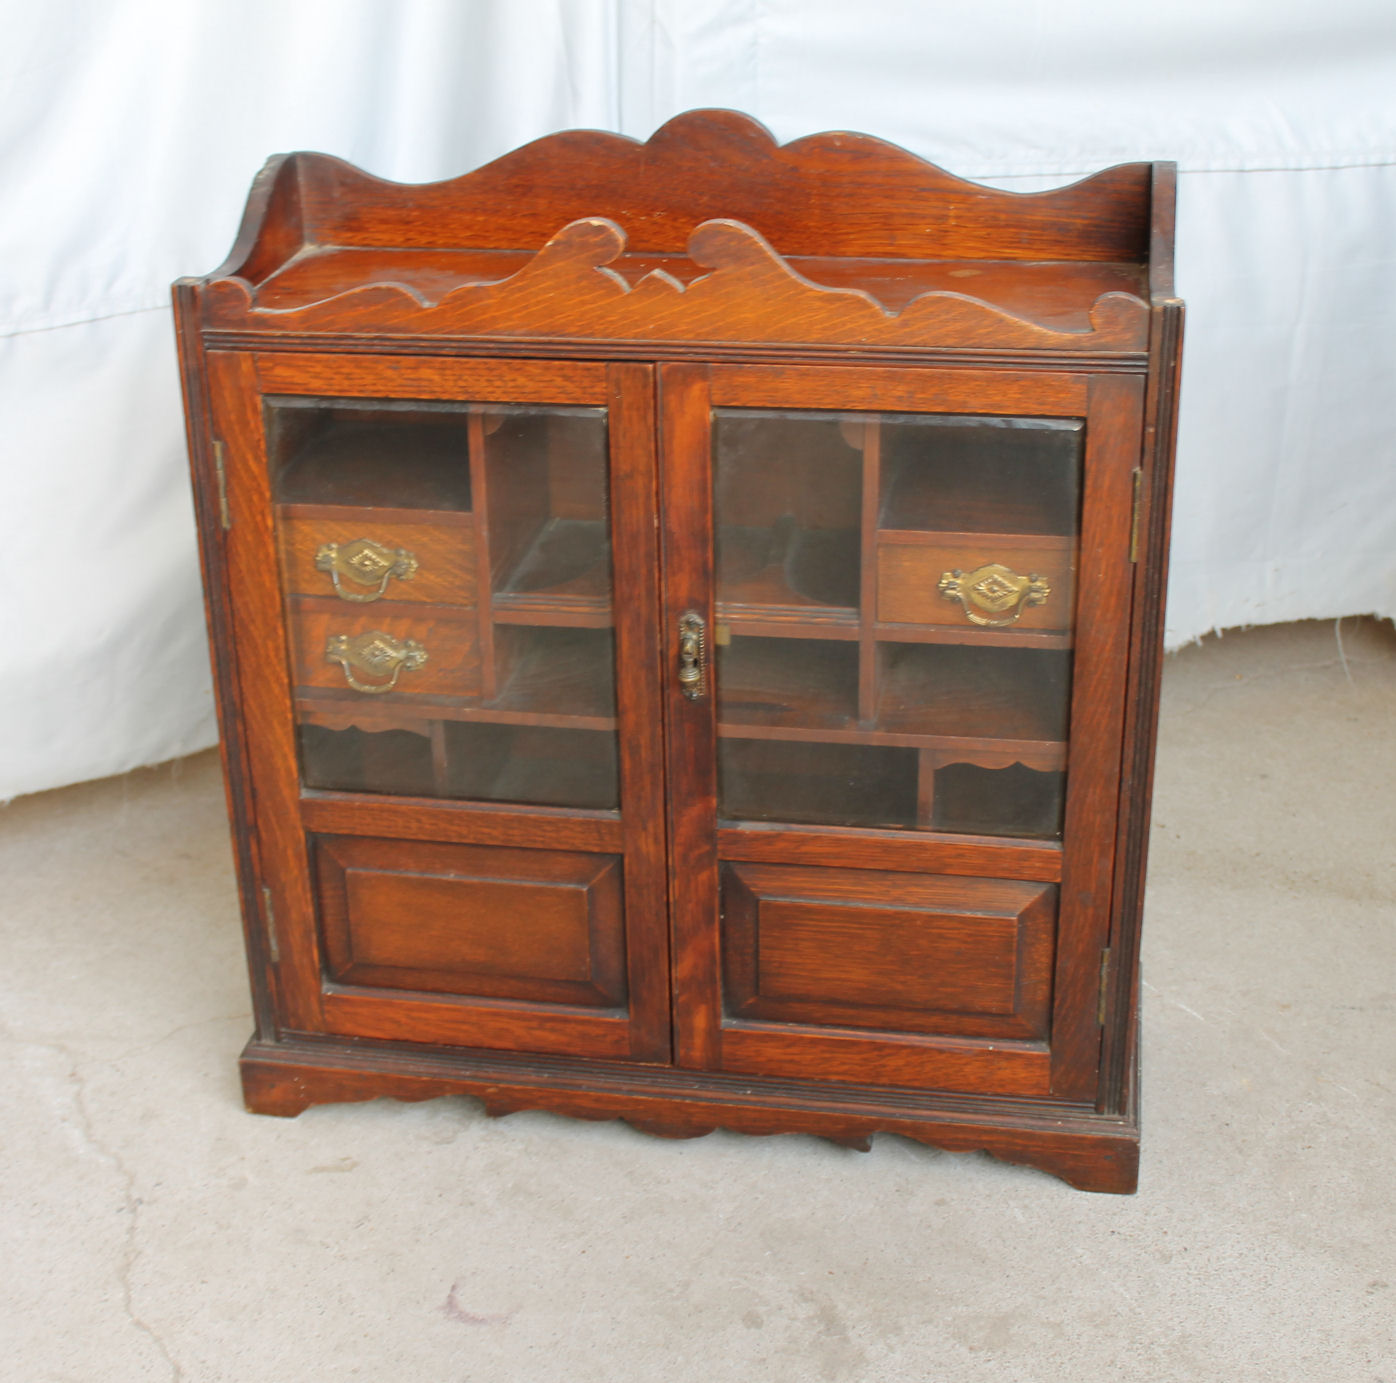 Bargain John's Antiques » Blog Archive Antique Oak Medicine Cabinet